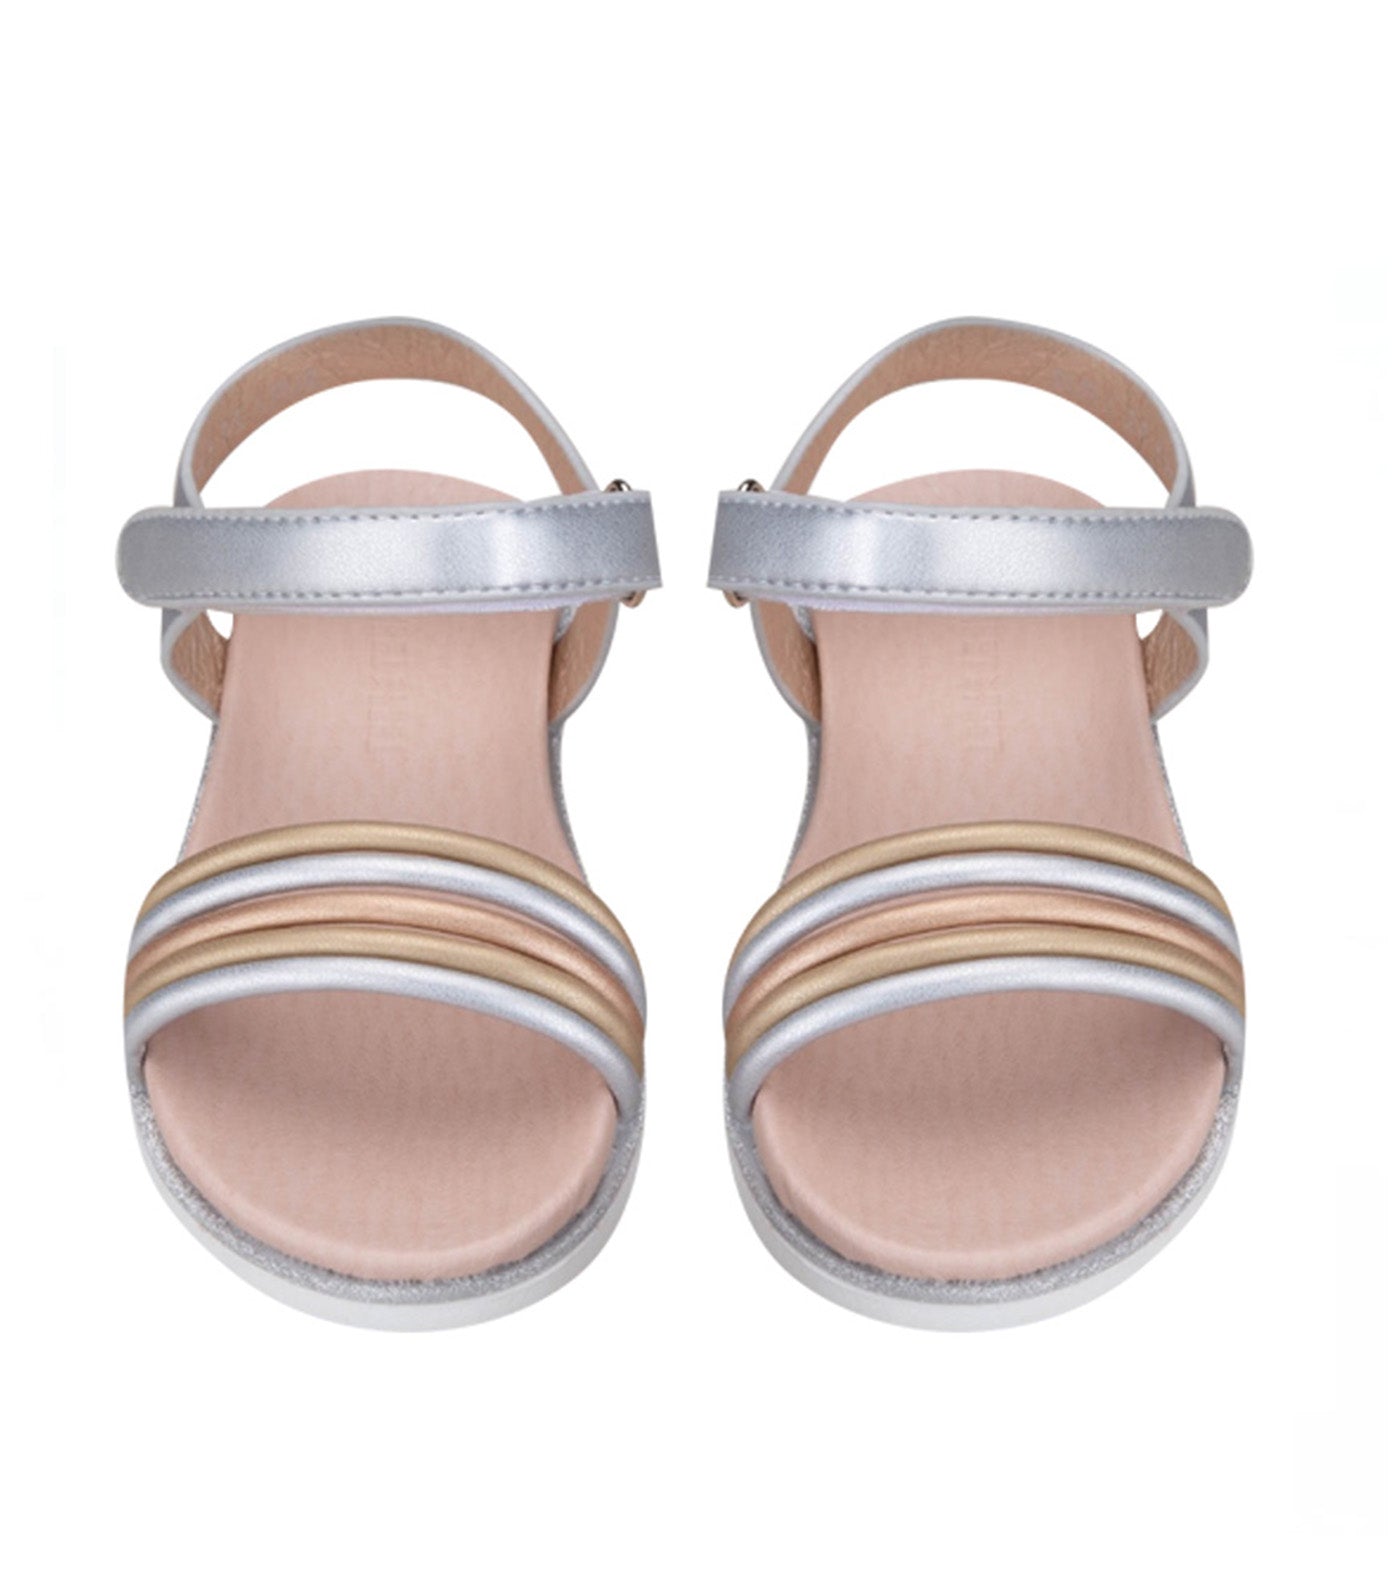 Suri Kids Sandals for Girls - Silver